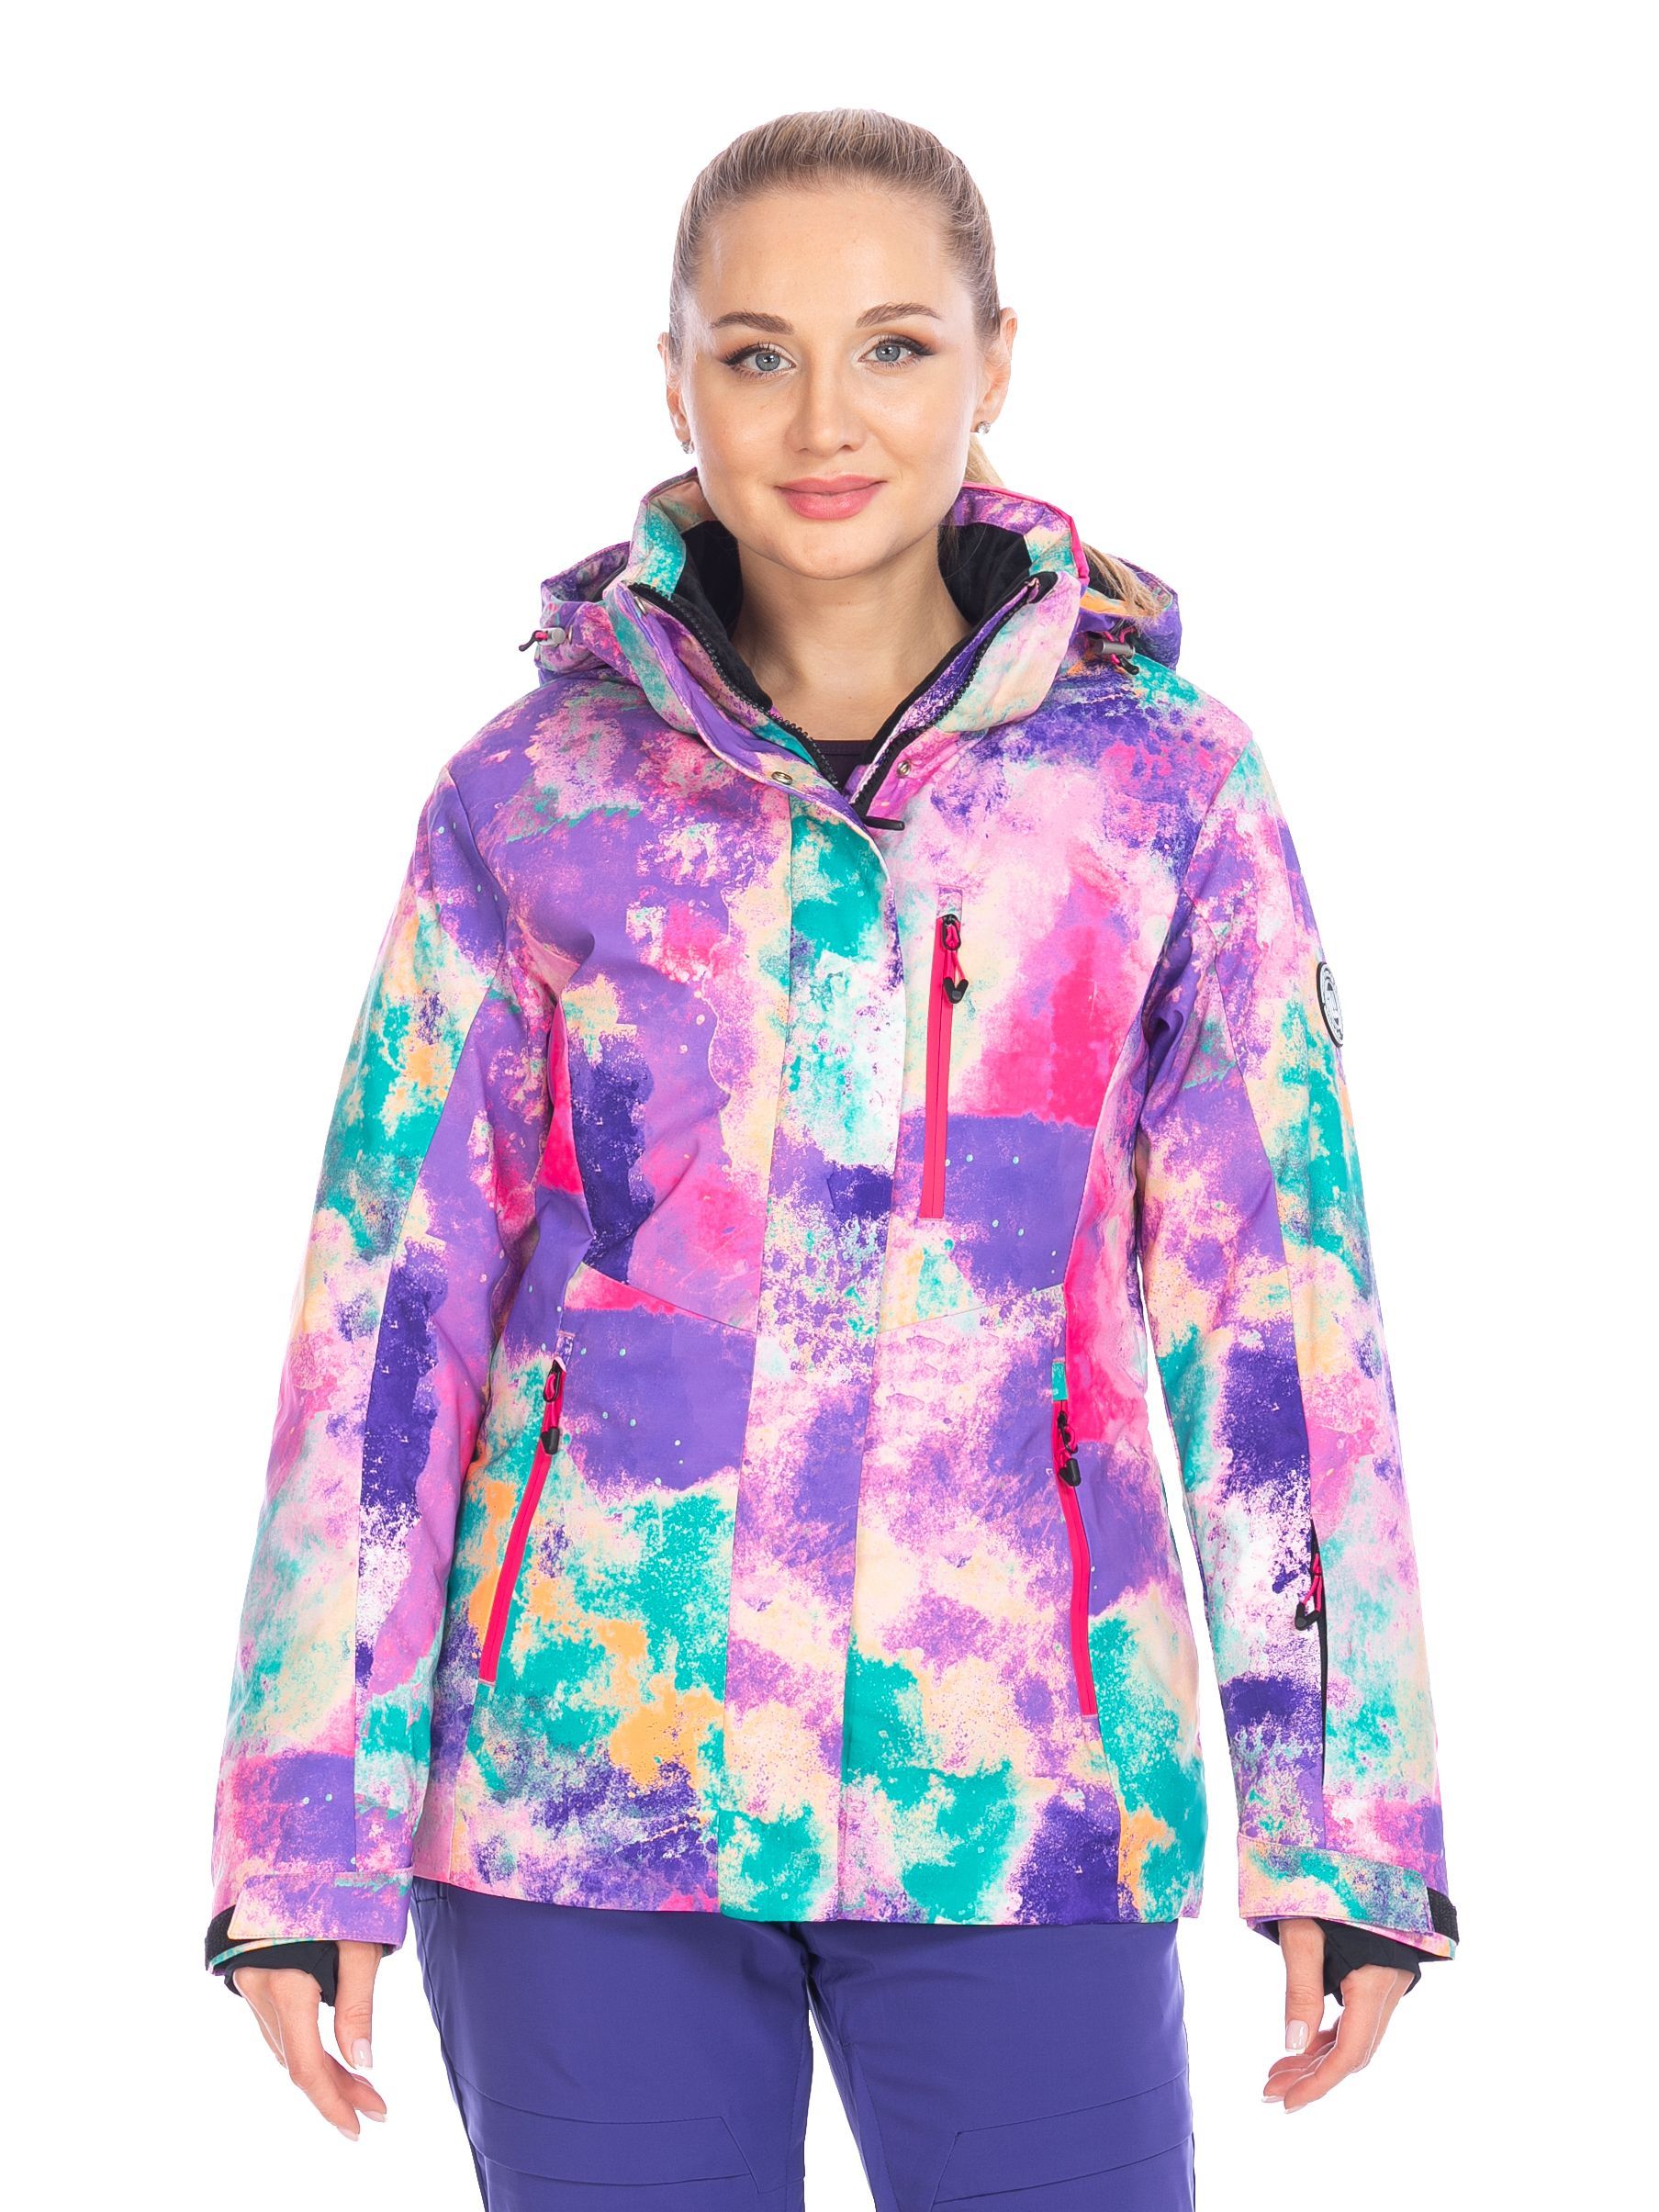 Куртка FORCELAB женская горнолыжная зимняя 48 RU Фиолетовый